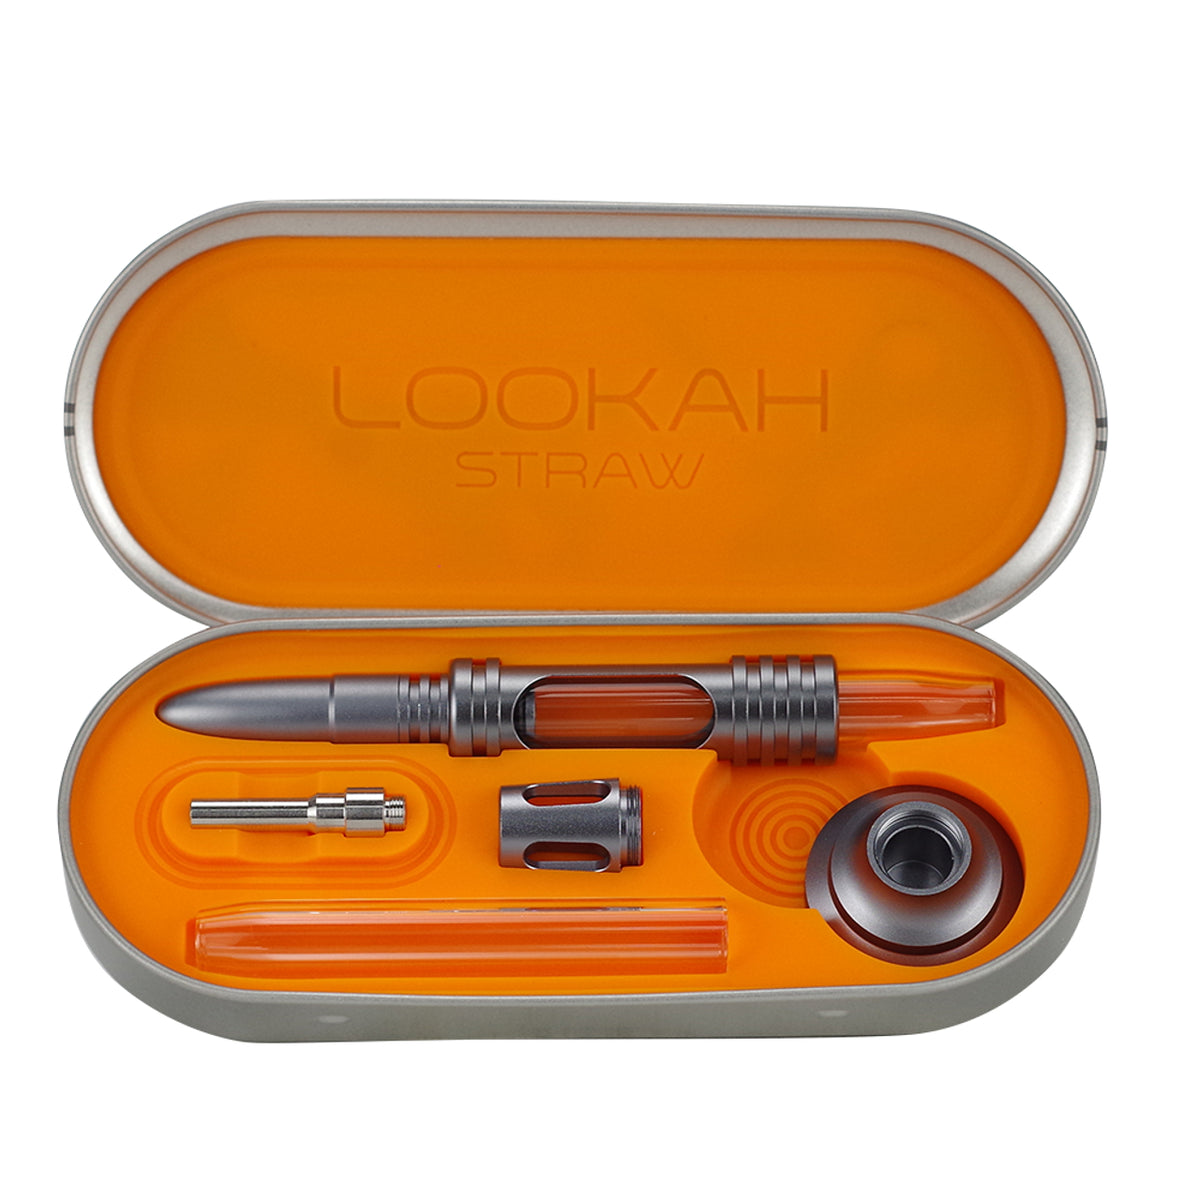 Lookah Portable Dab Straw Kit - Supply Natural